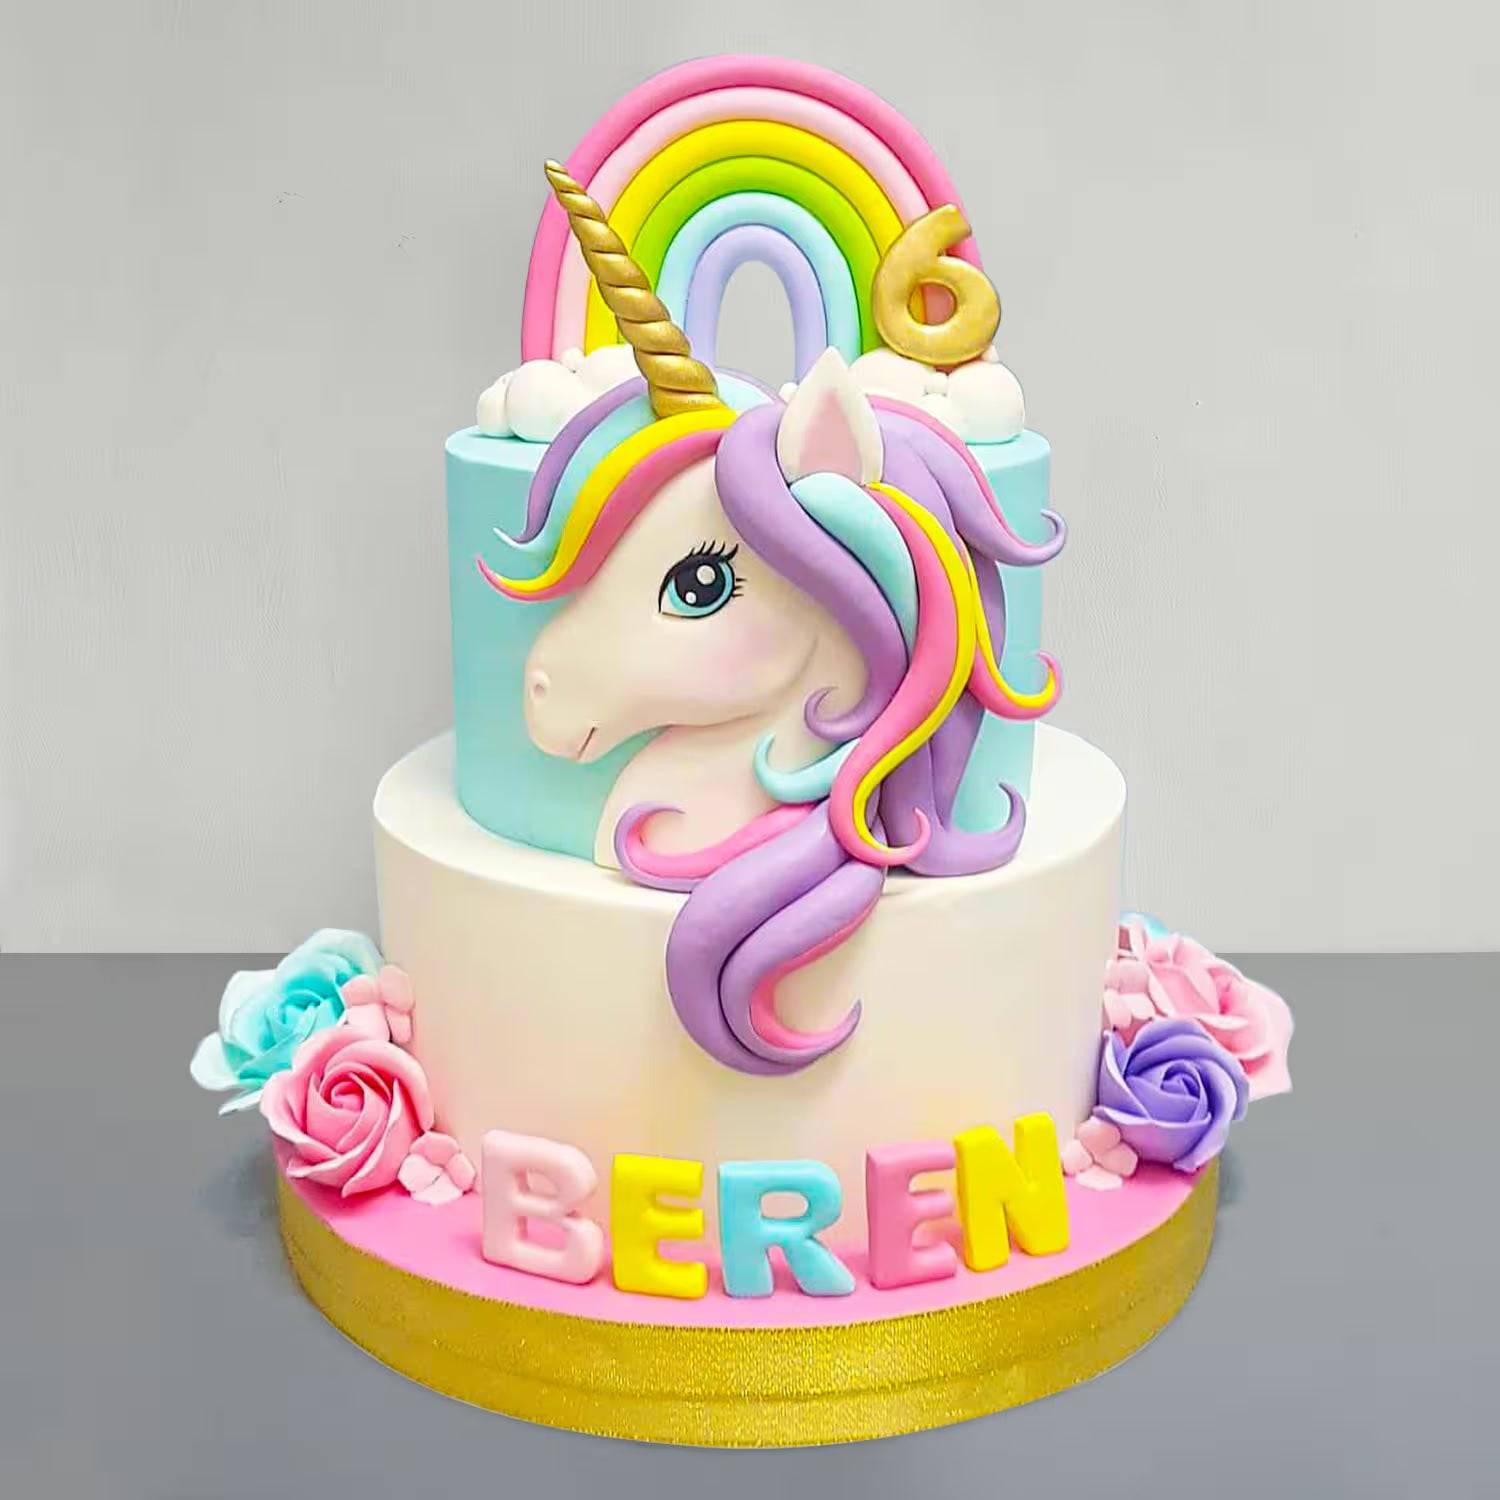 Decorative Colorful Unicorn Cake - YuvaFlowers